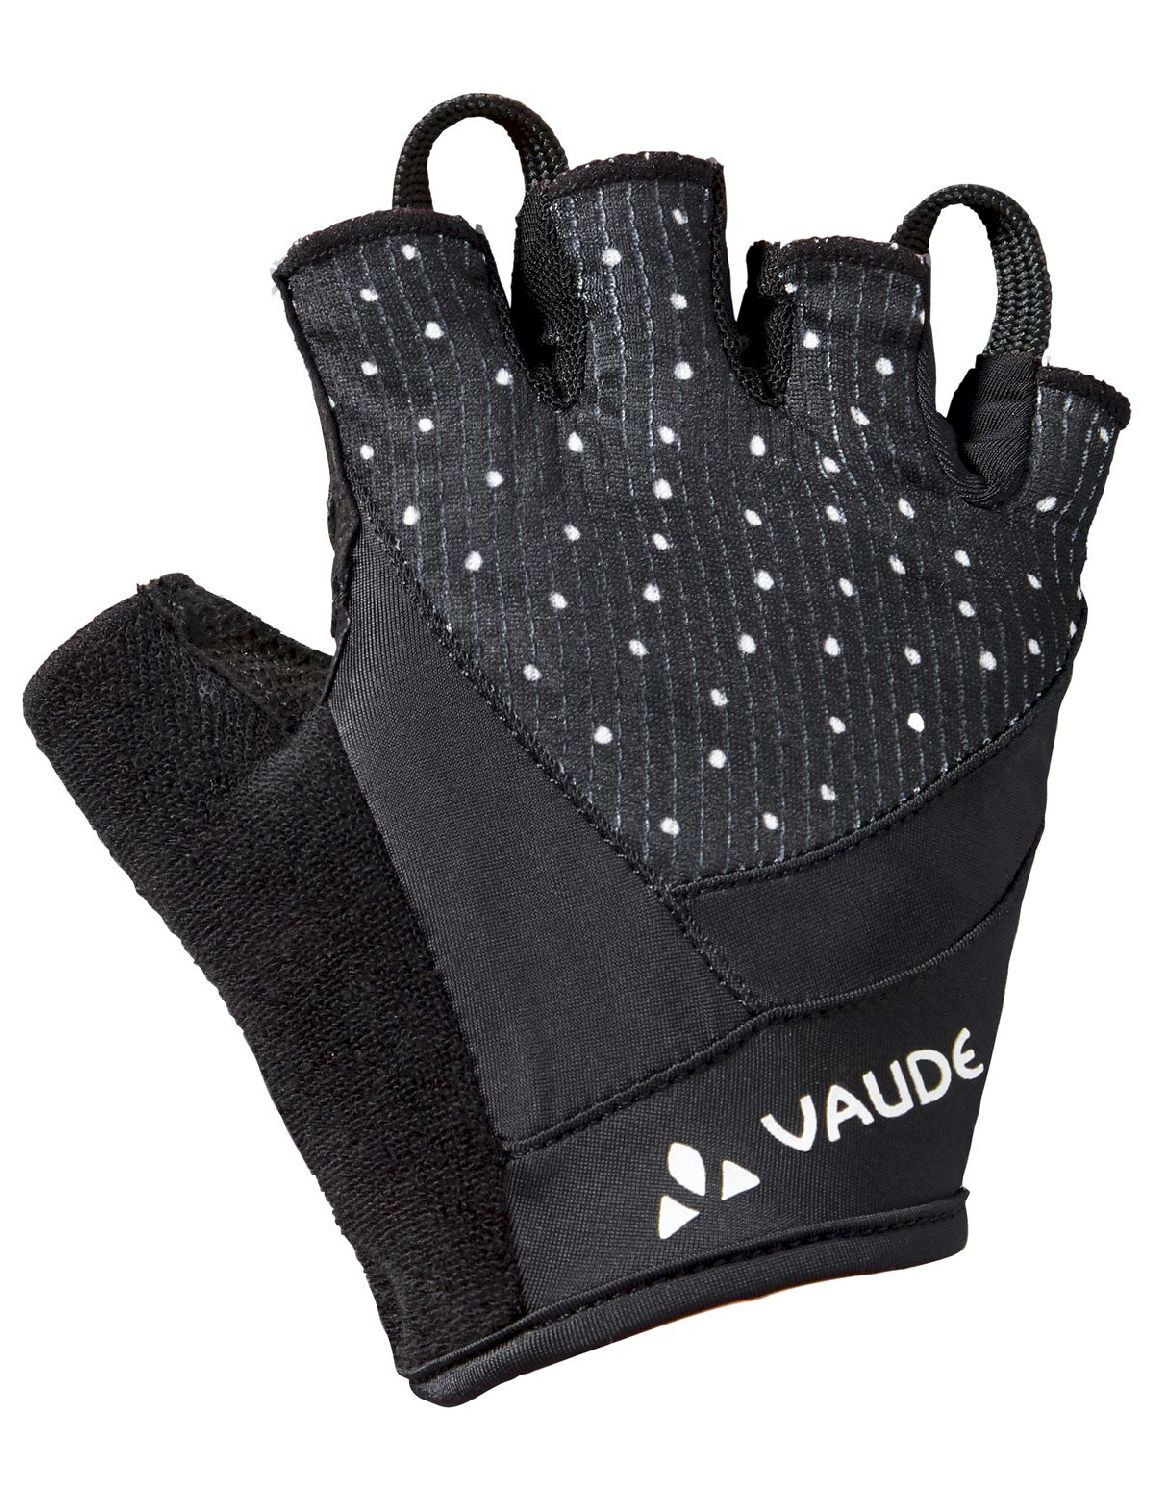 Vaude Advanced Gloves II - Cycling gloves - Women's